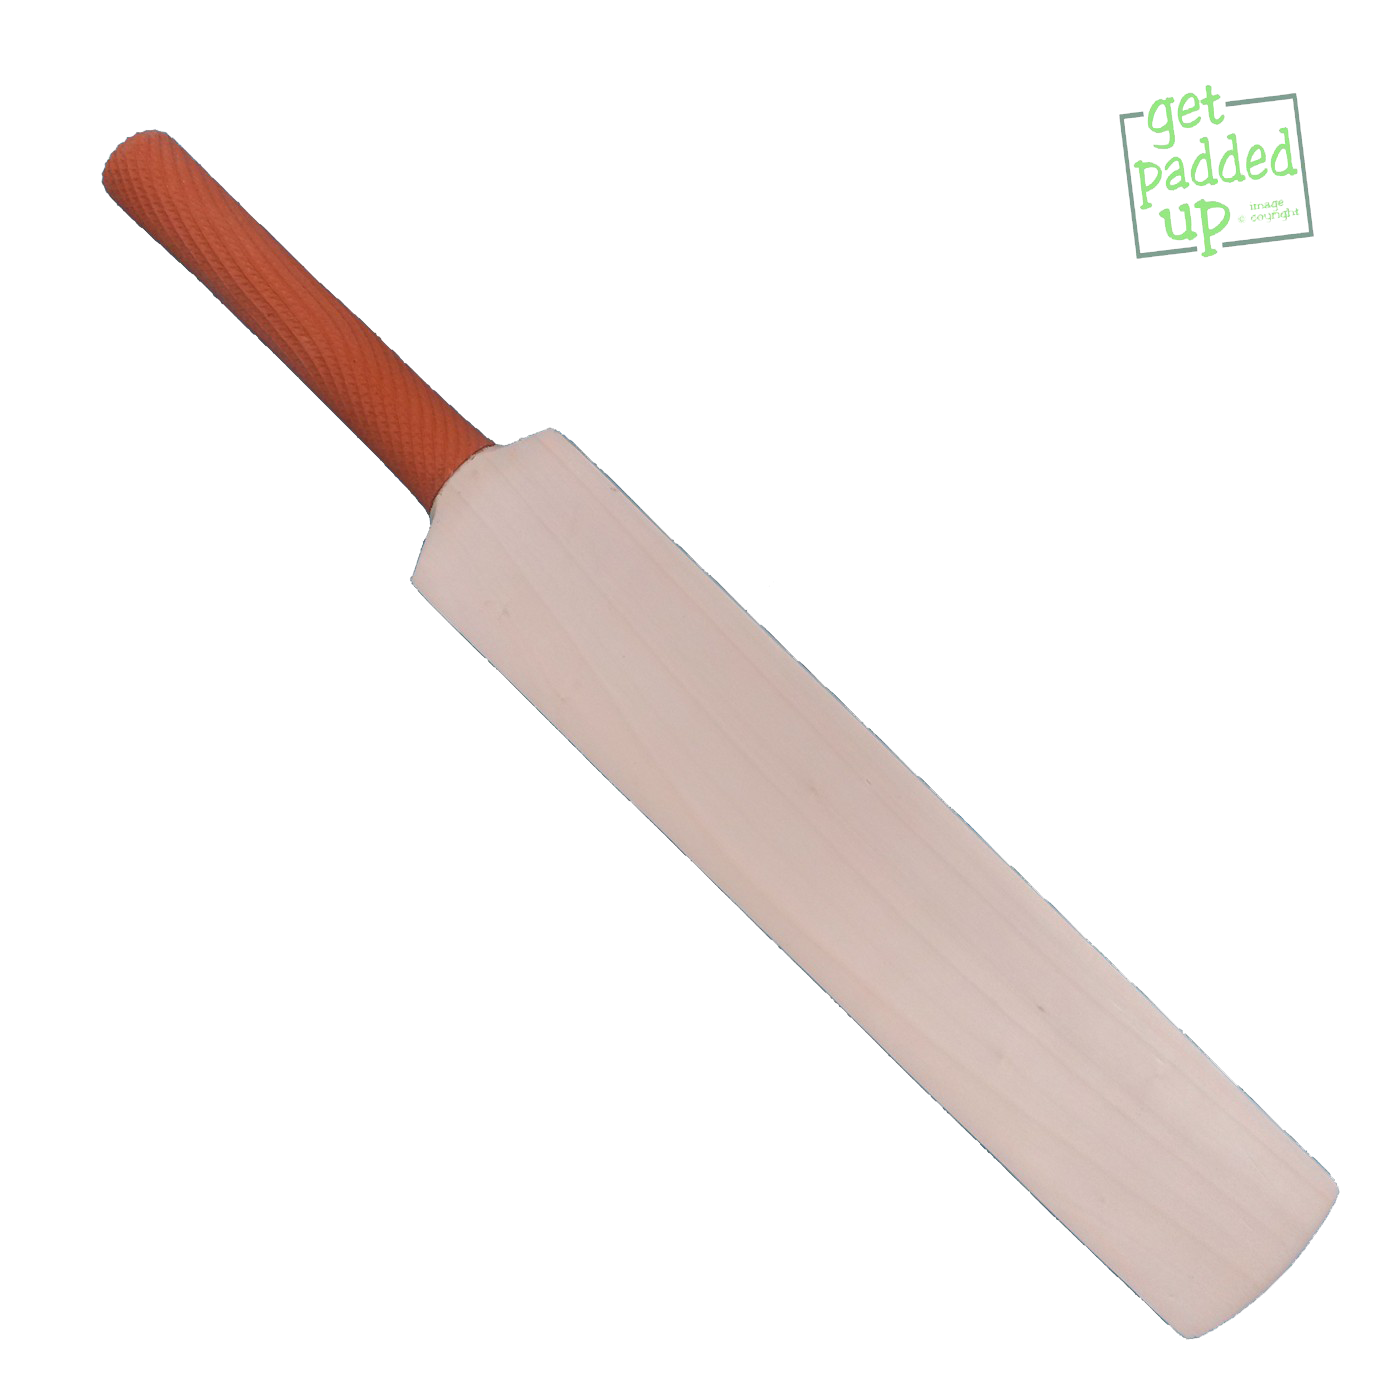 Cricket Bat Png Clipart - Cricket Bat, Transparent background PNG HD thumbnail